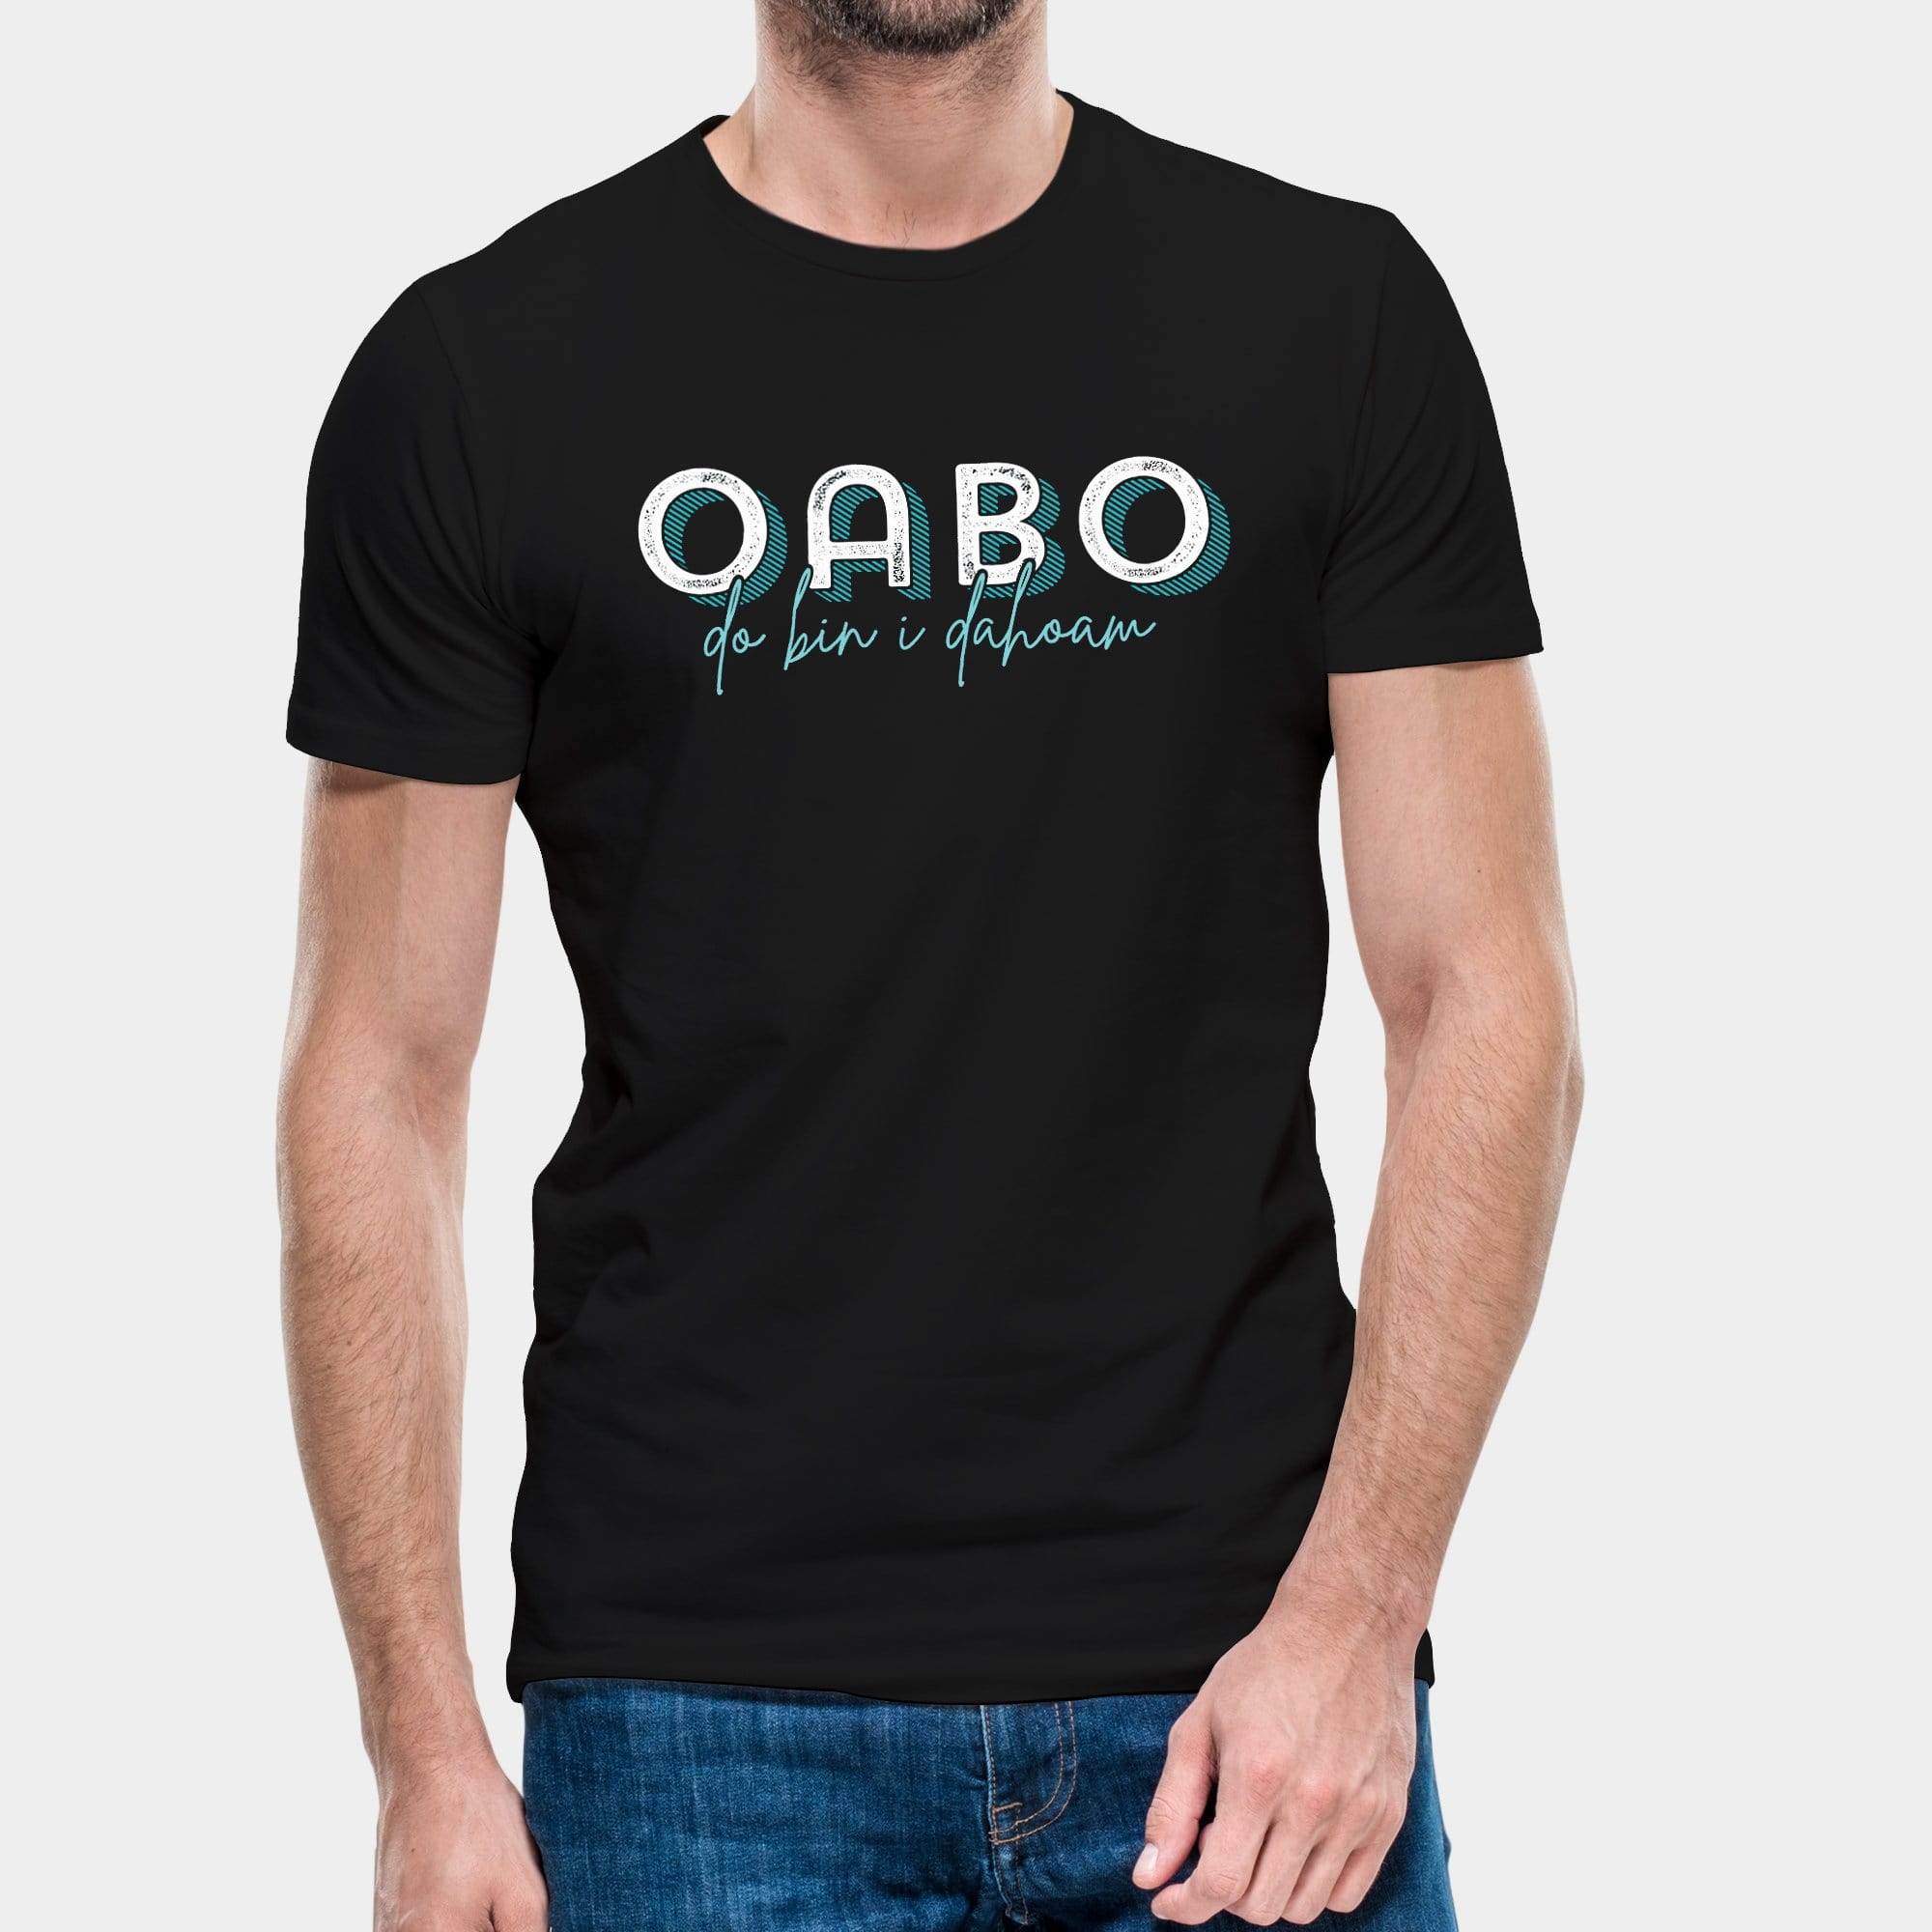 Projekt Herren-T-Shirt "Oabo" S / schwarz - aus nachhaltiger und fairer Produktion